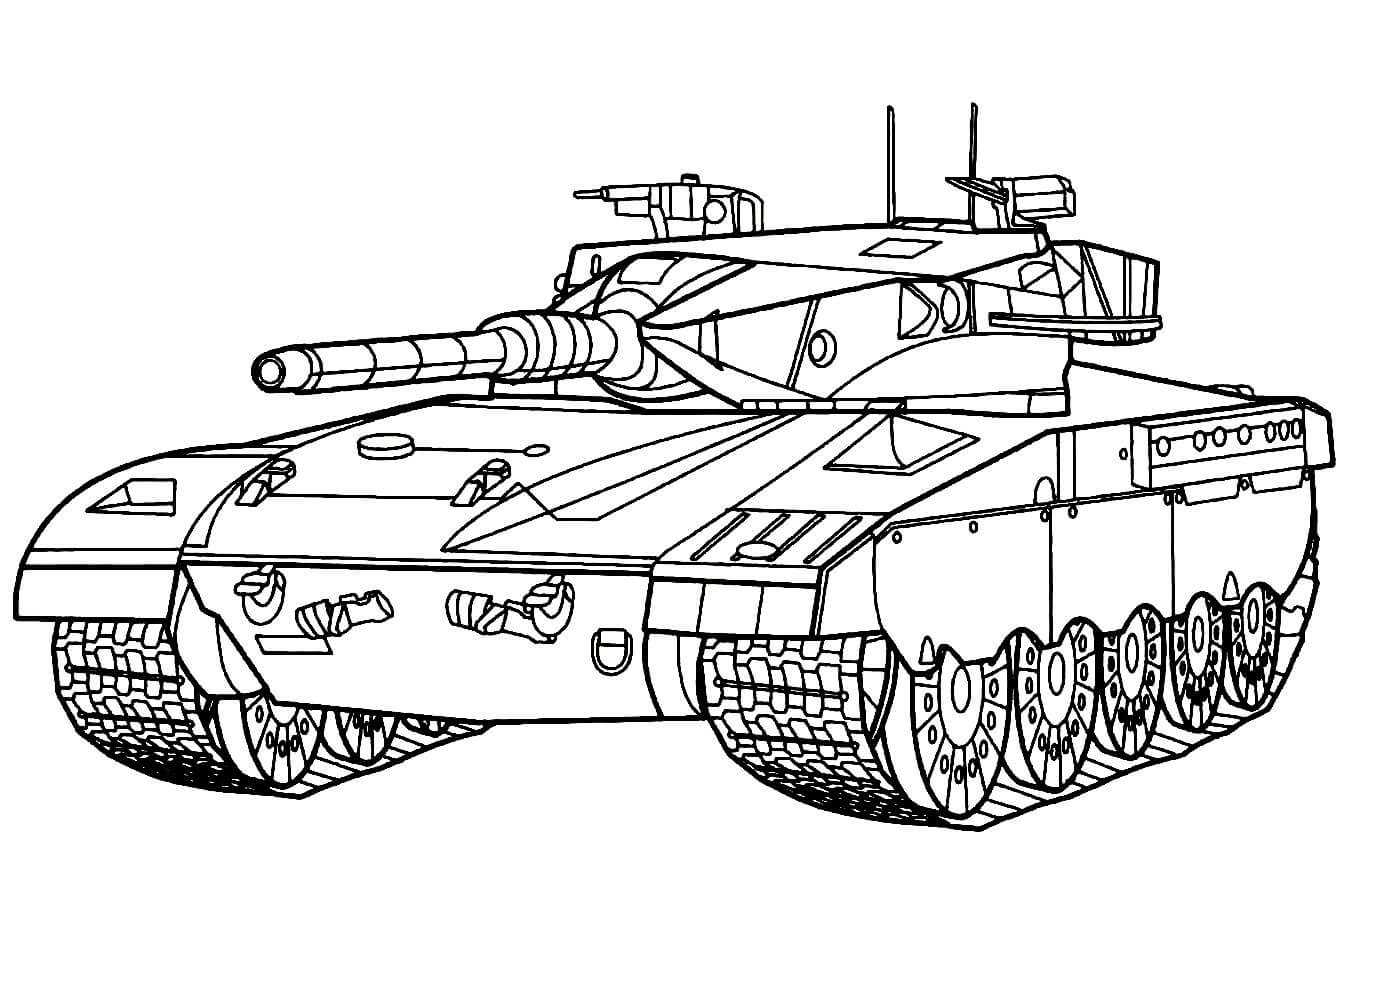 Раскраска танки распечатать бесплатно или скачать | ozornik.net